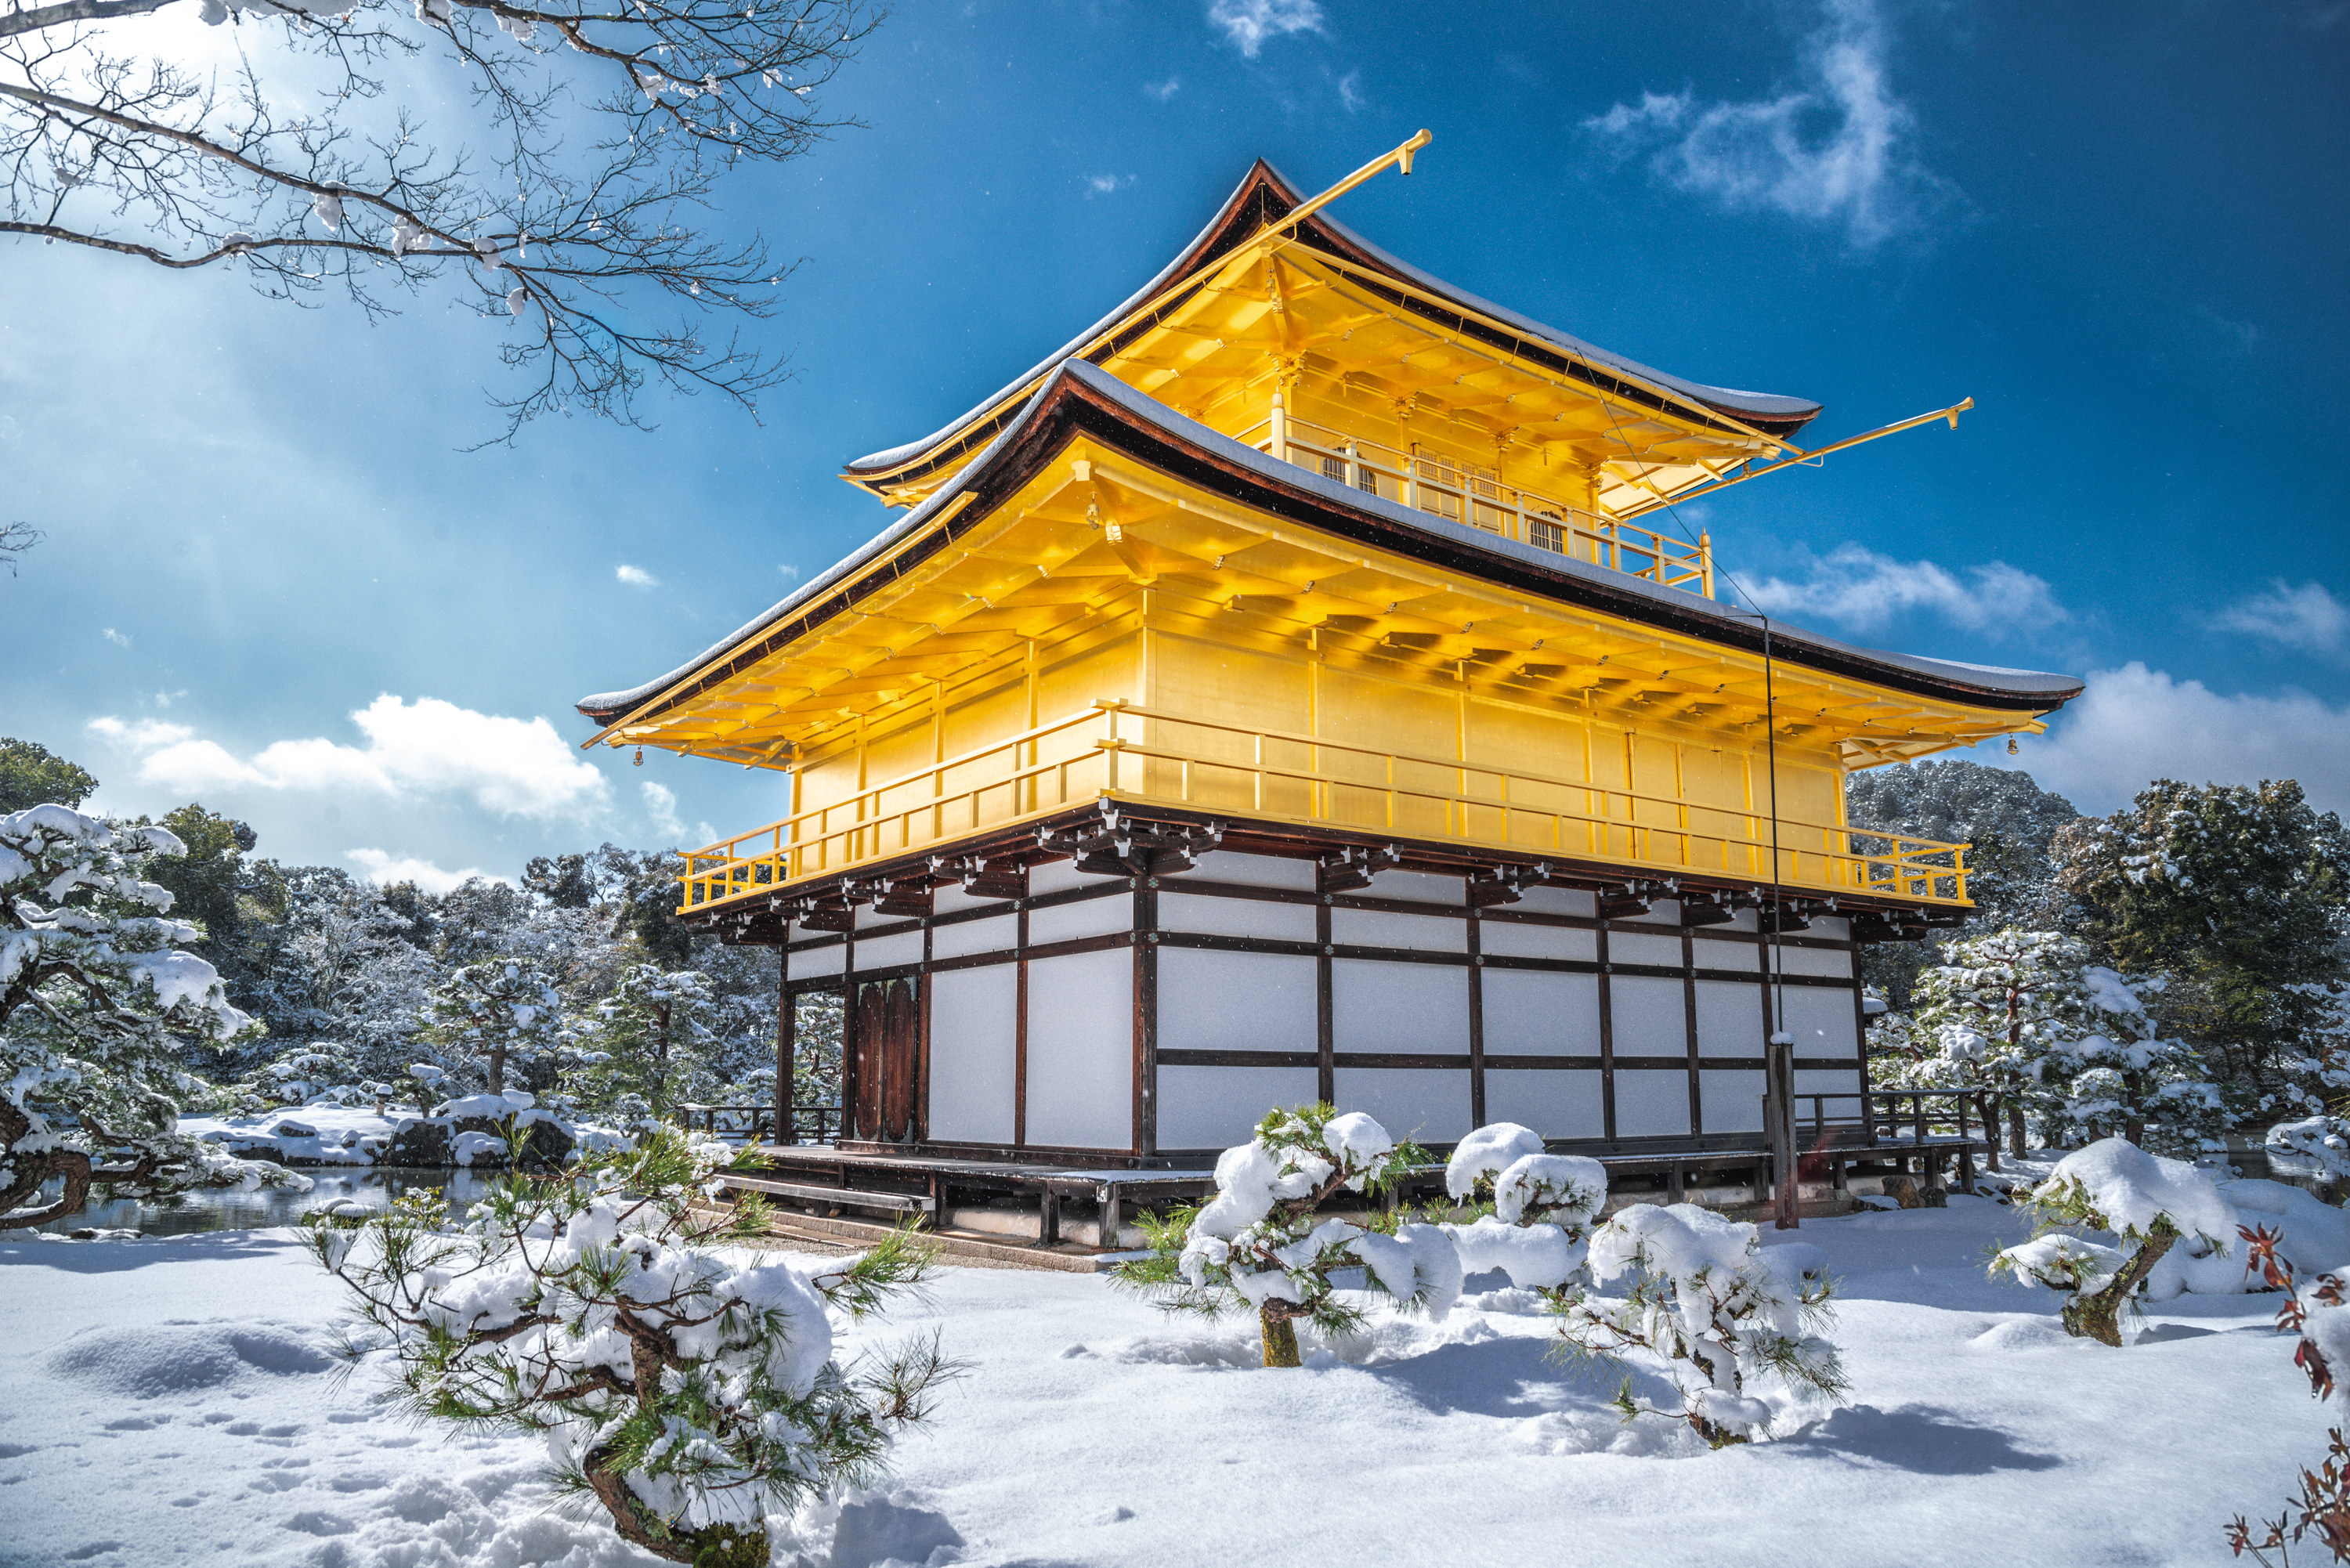 冬の京都 雪の金閣 京都の風景 | JAPAN WEB MAGAZINE 「日本の風景」 JAPAN SCENE